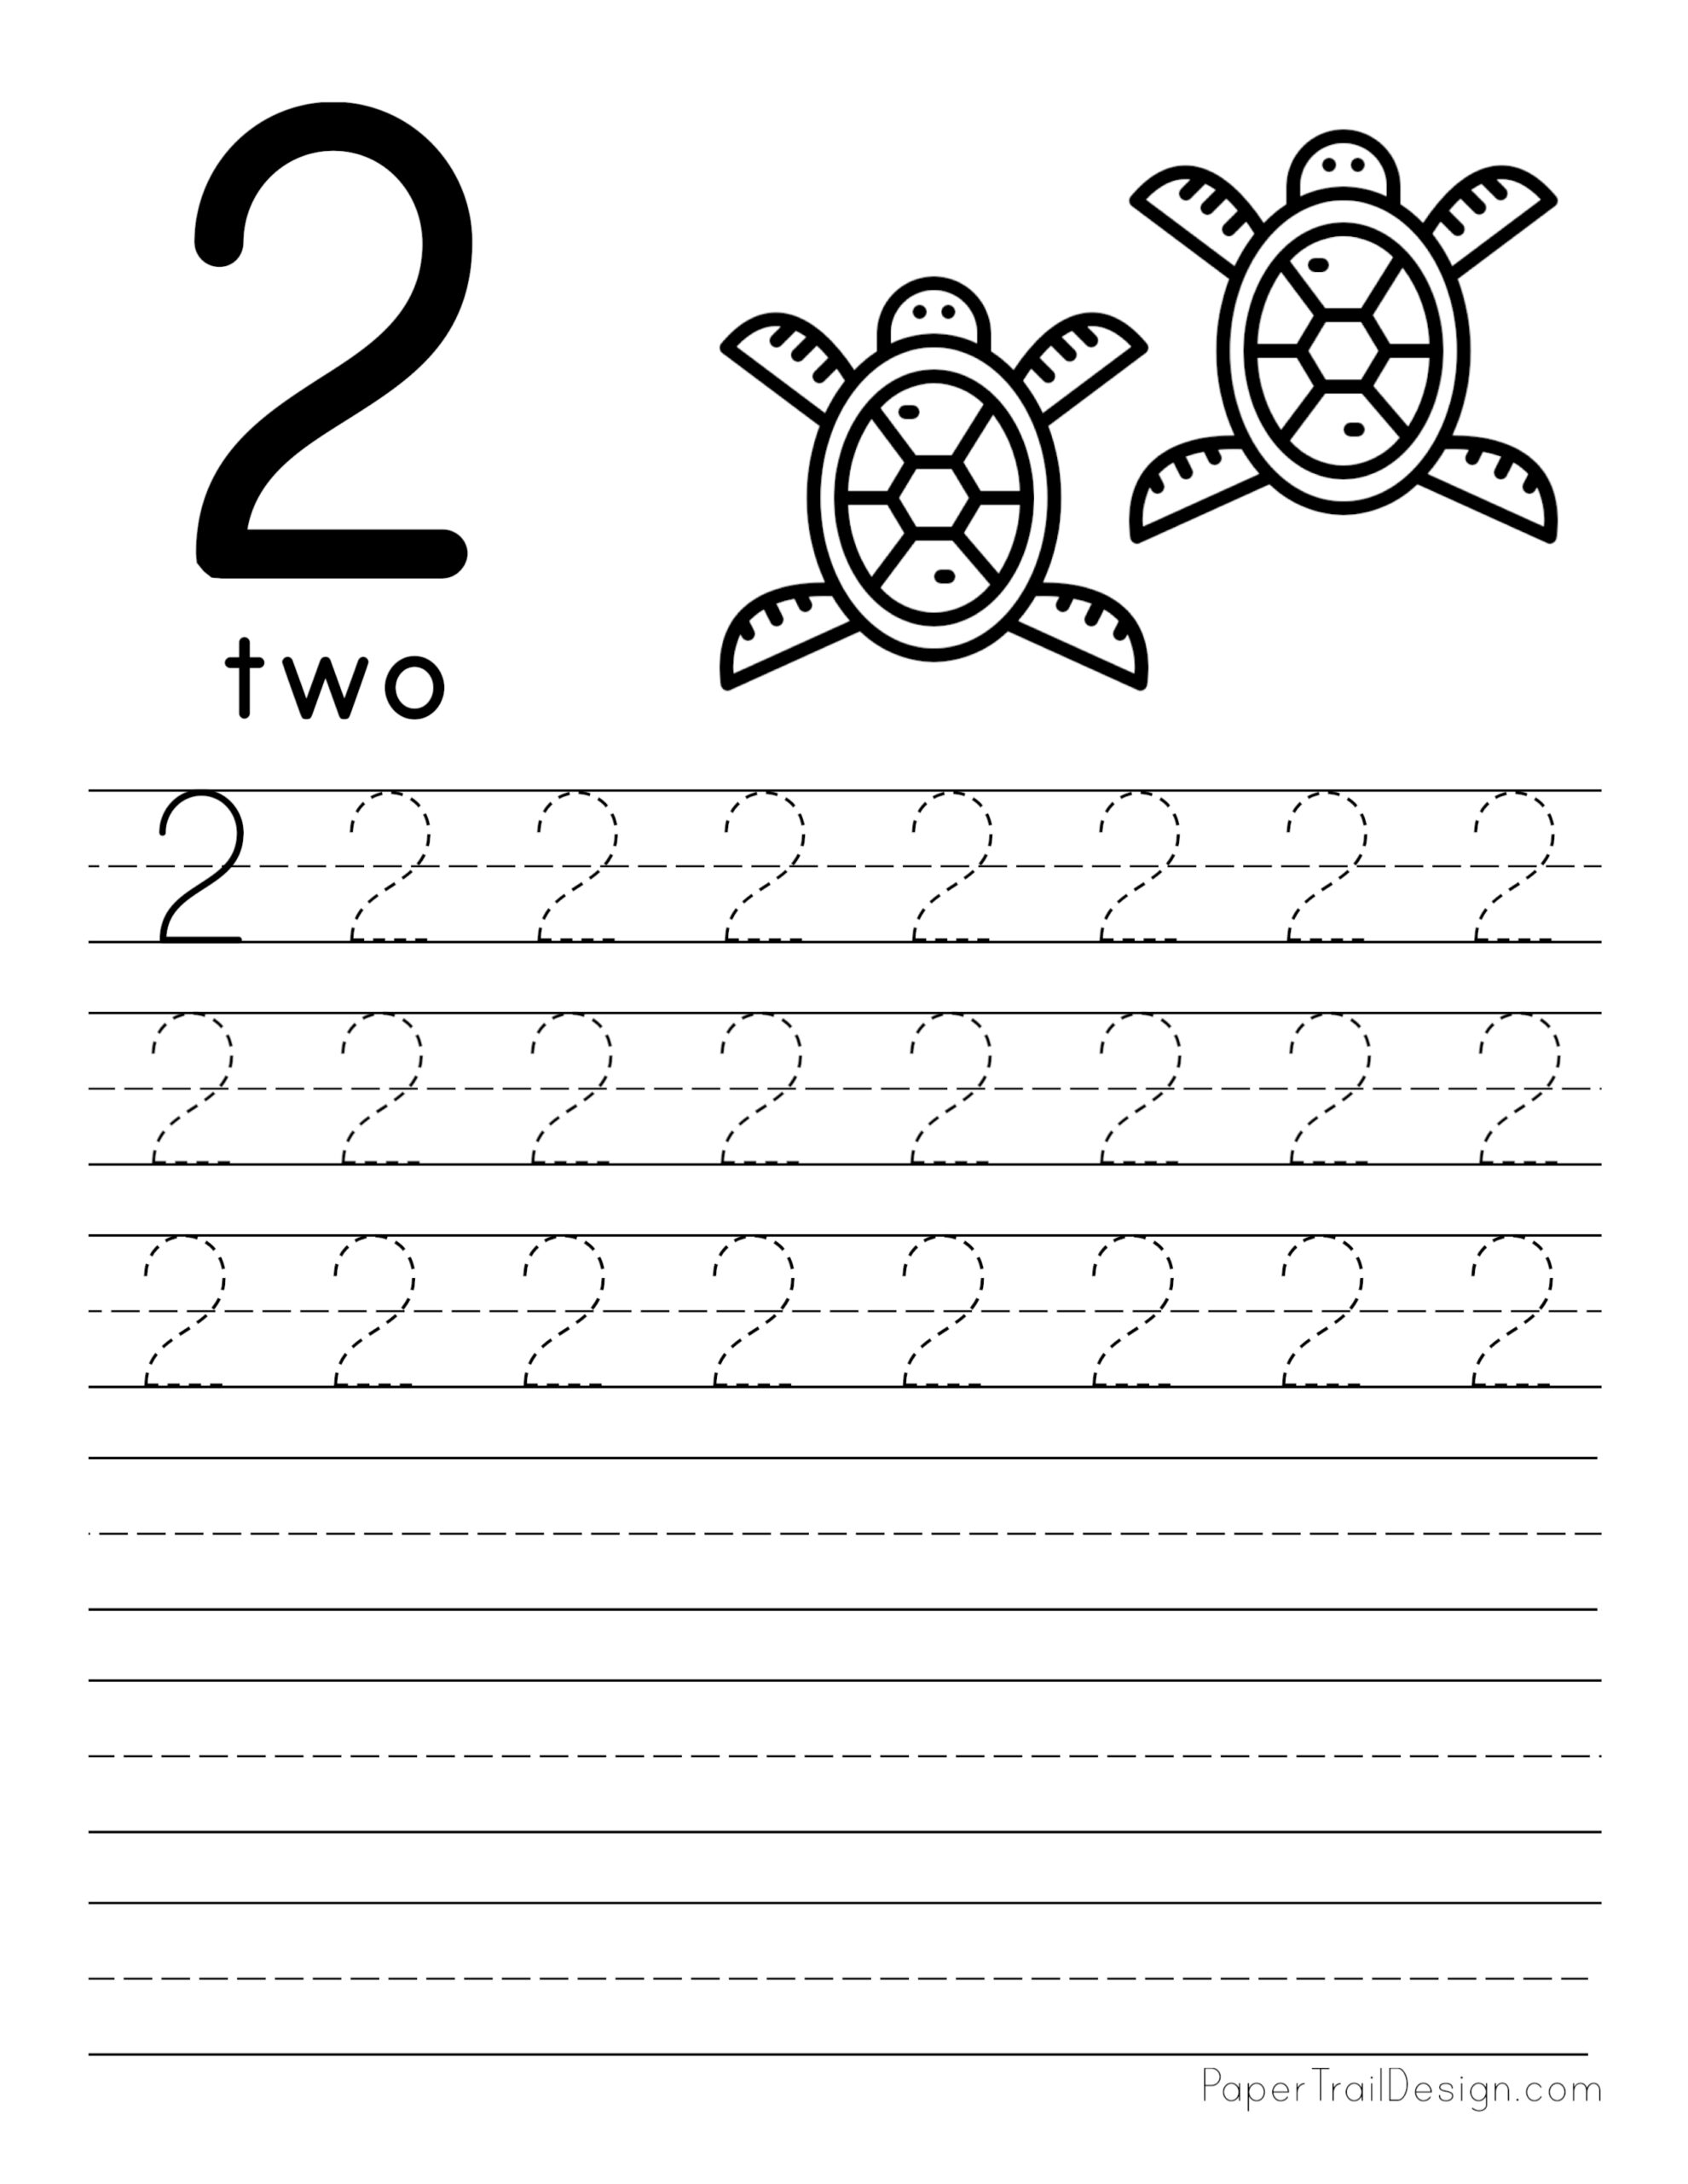 number-3-tracing-and-colouring-worksheet-for-kindergarten-numbers-preschool-kindergarten